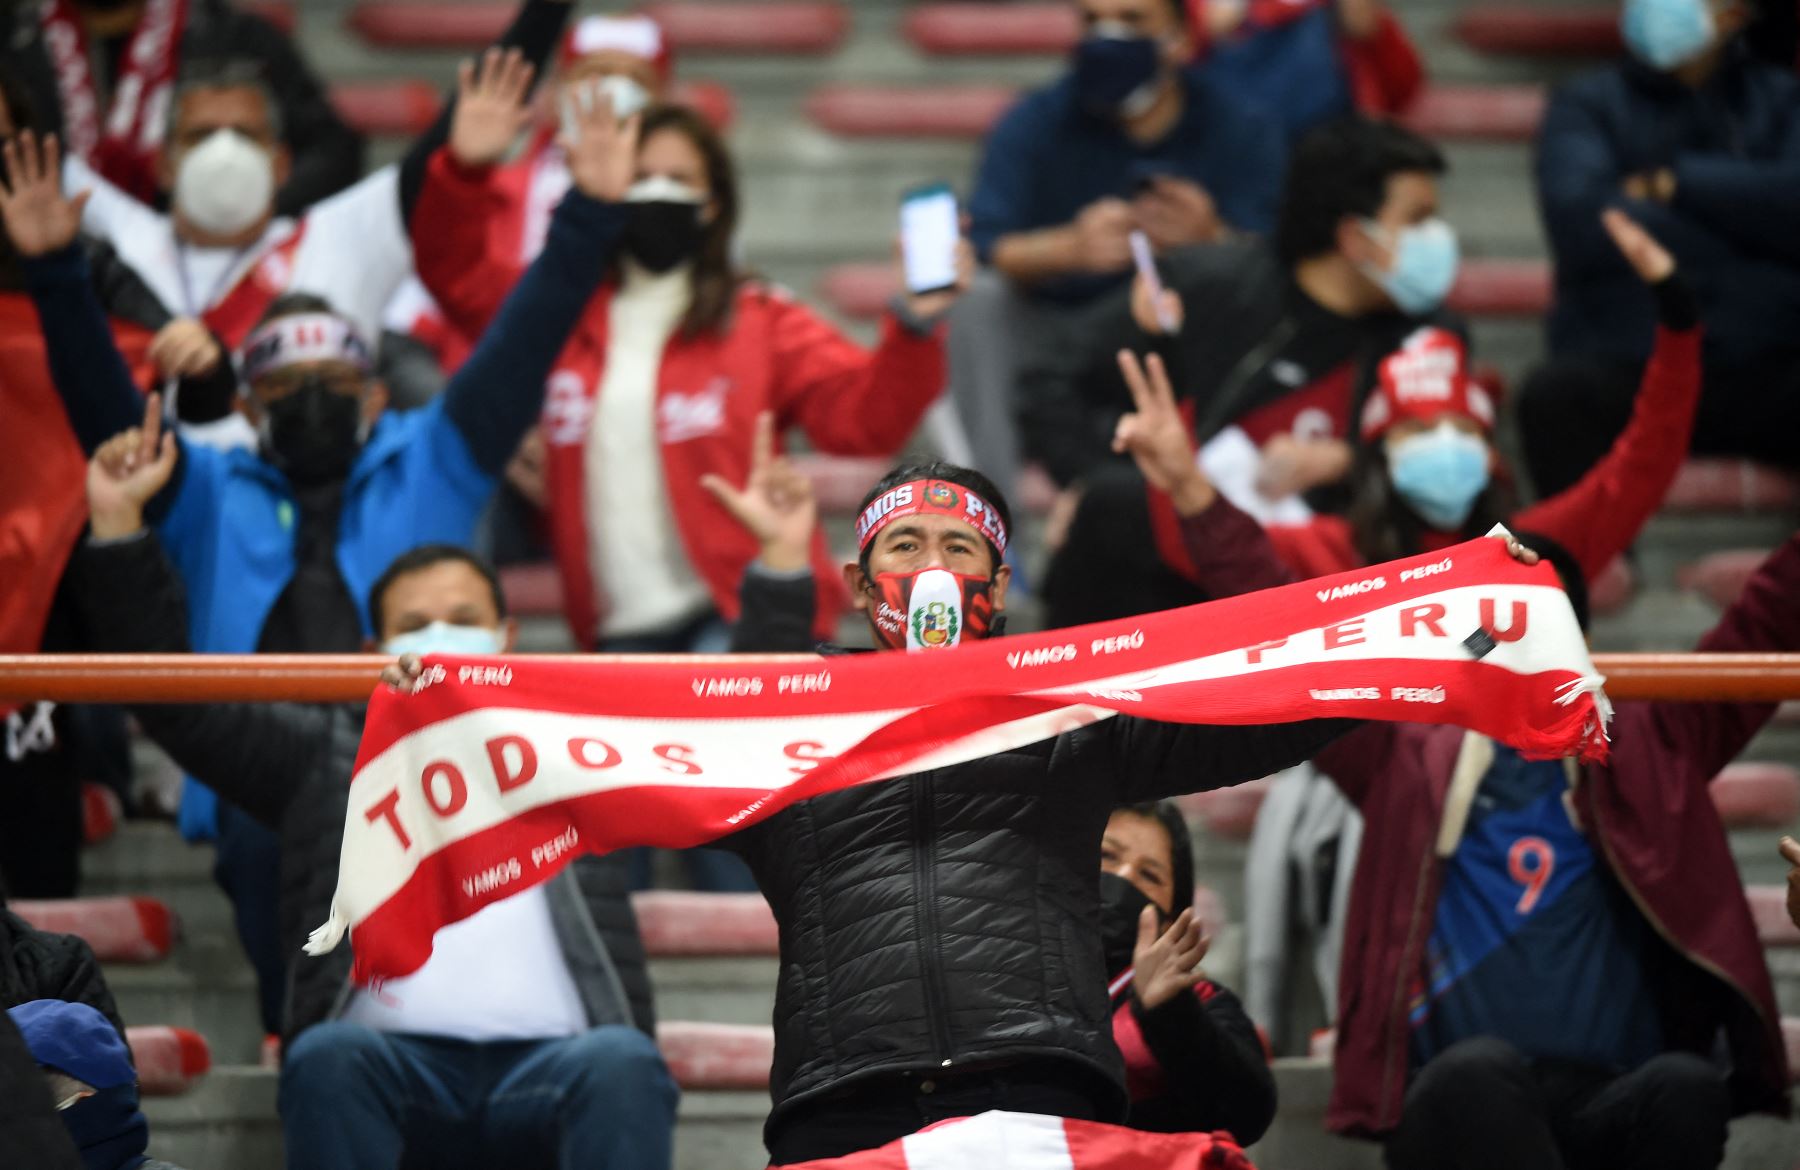 50% de hinchas podrían ir a alentar a la selección peruana en el estadio Nacional. Foto: AFP